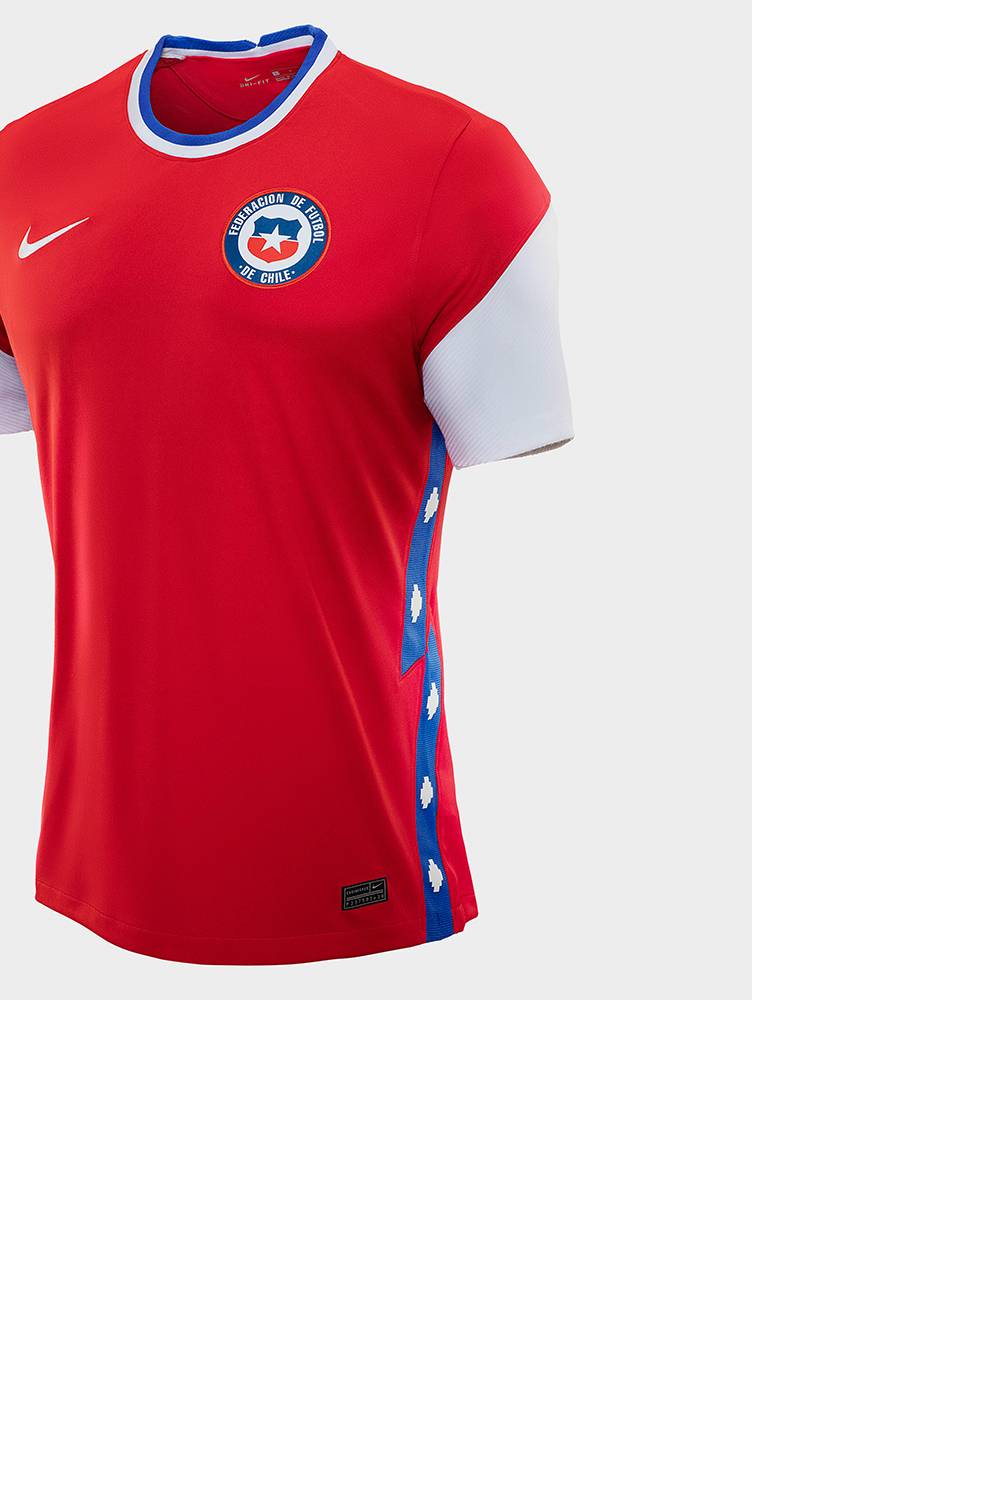 NIKE - Camiseta de Futból Selección Chilena Hombre